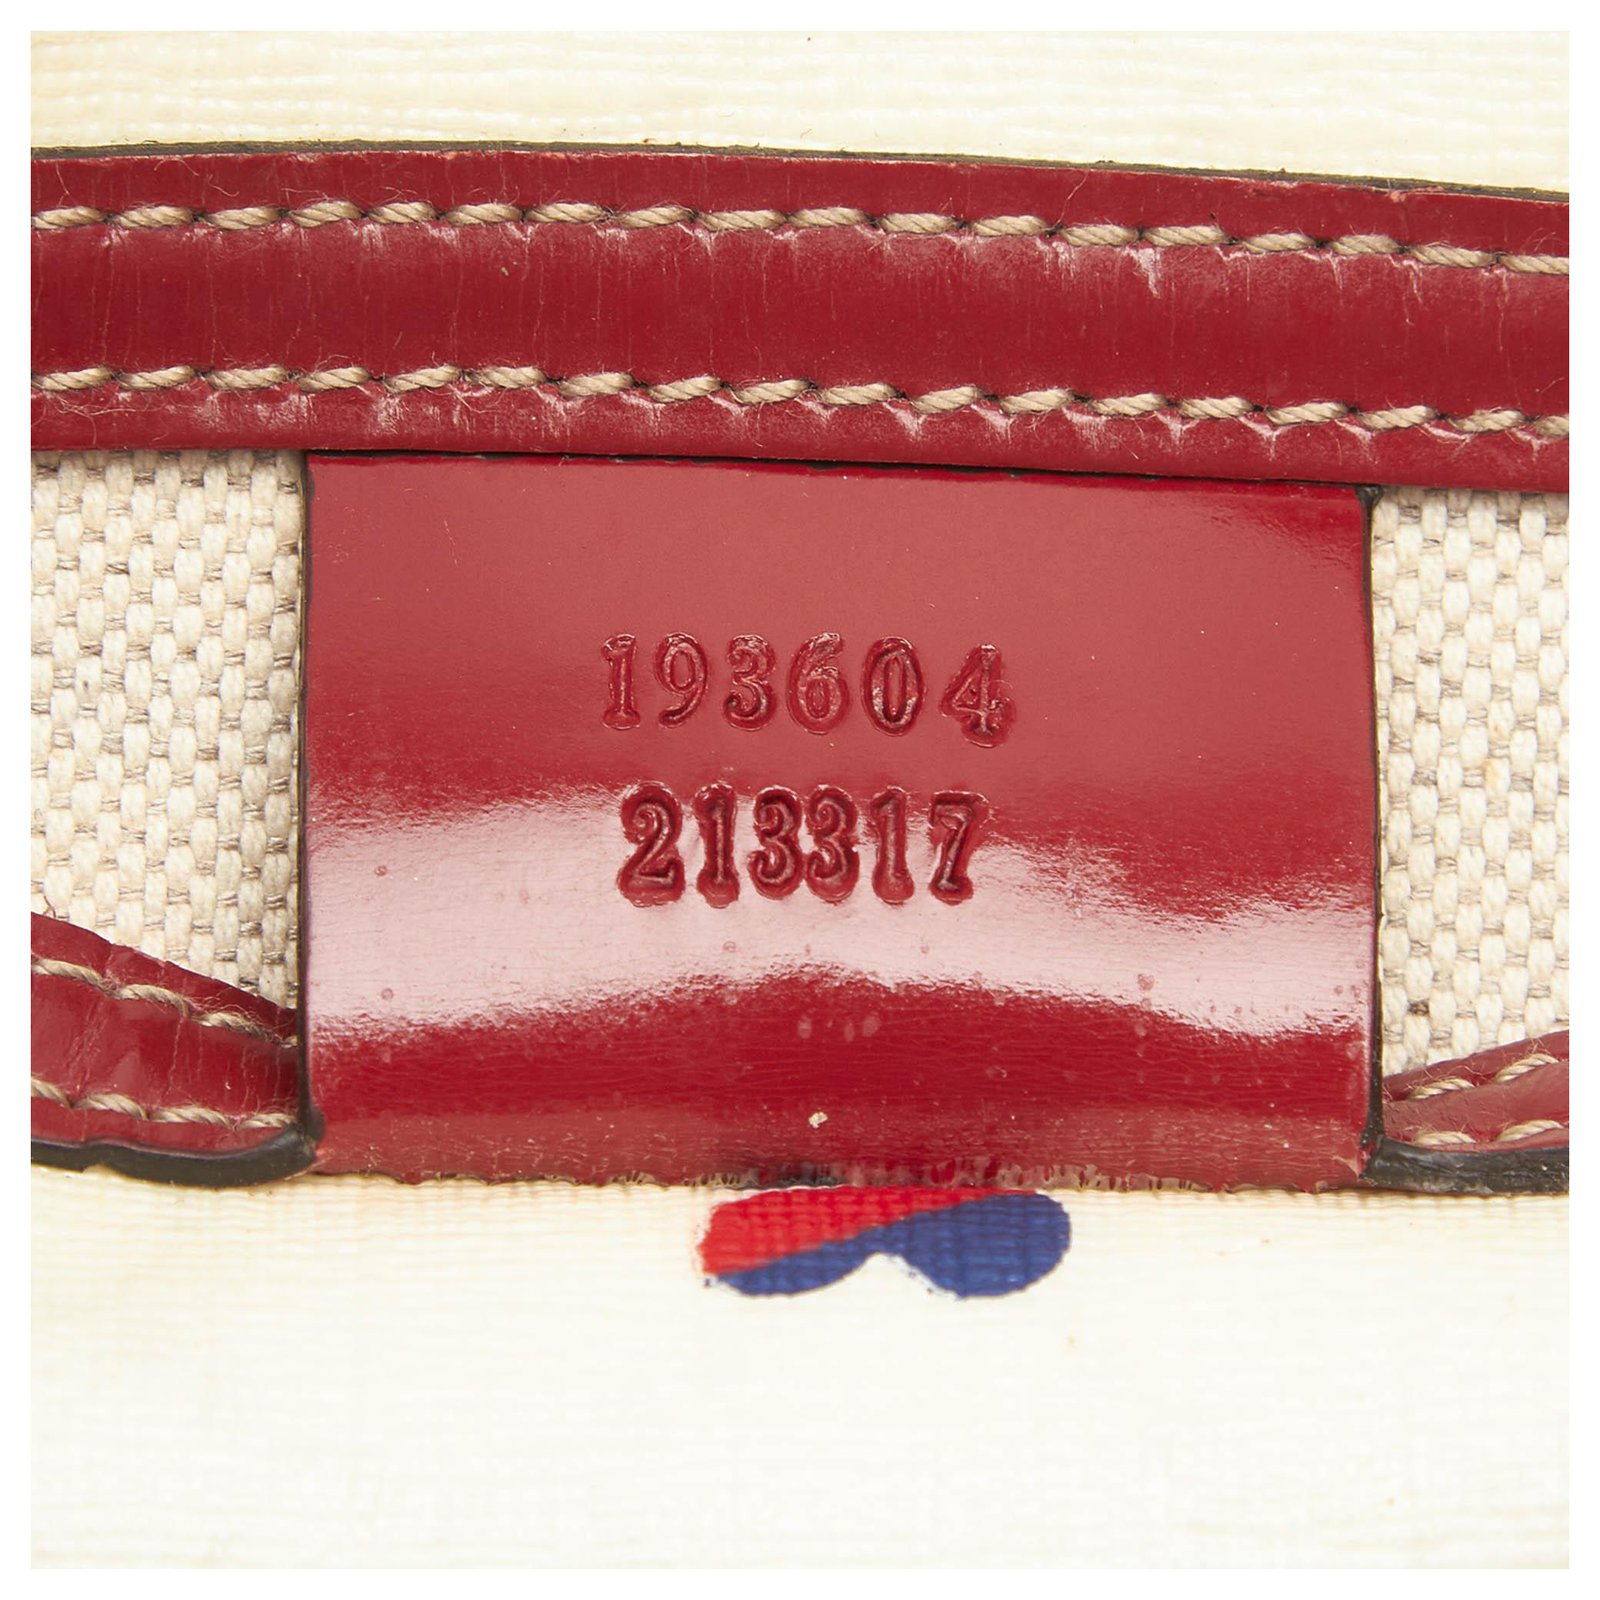 Gucci GG Supreme Hearts Small Joy Boston Bag (SHG-28628) – LuxeDH